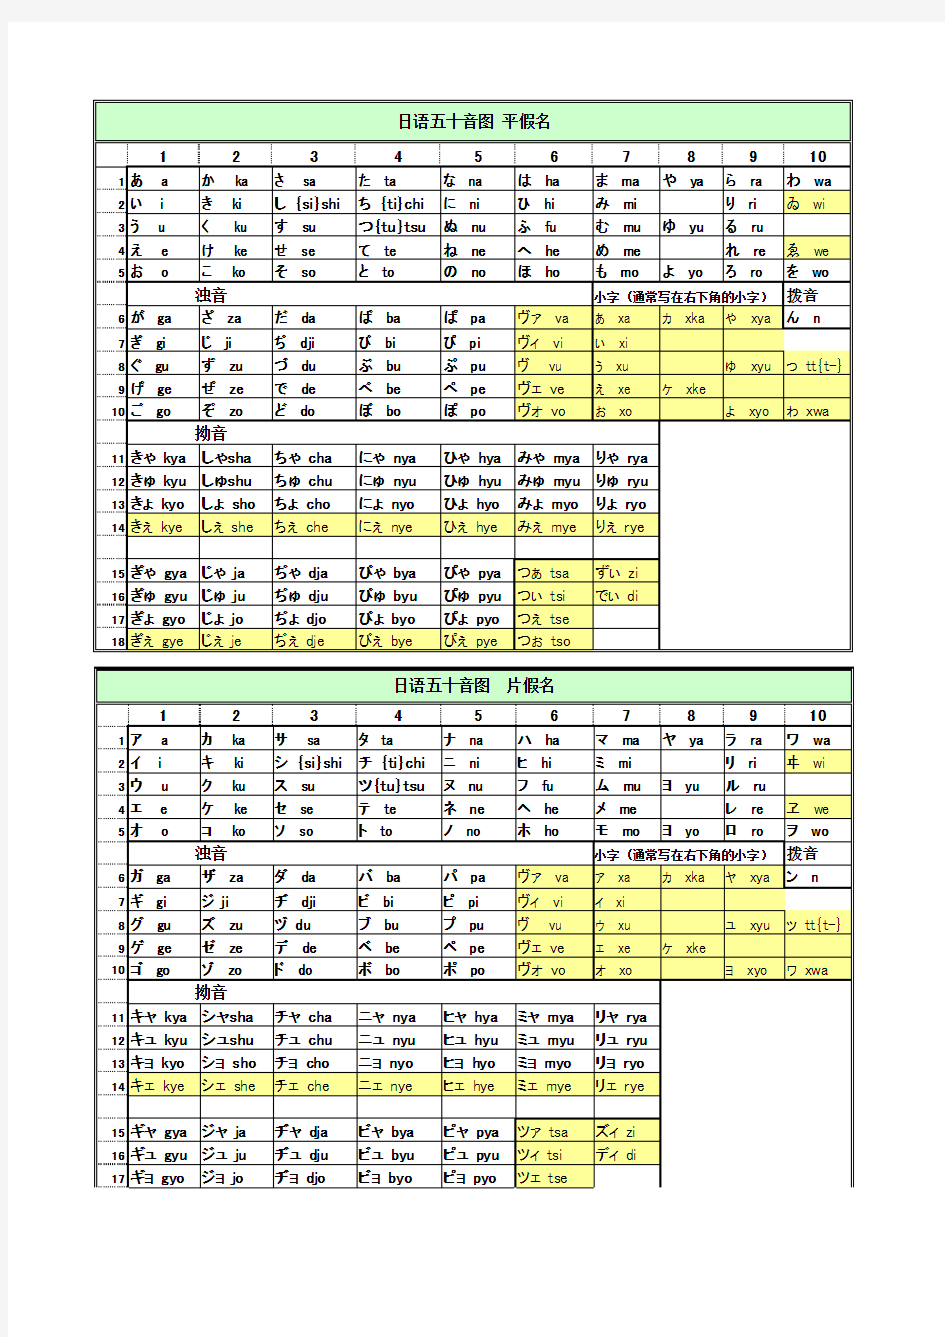 日语五十音图(平假名_片假名_罗马字_含最新发音)_打印版_Excel表格